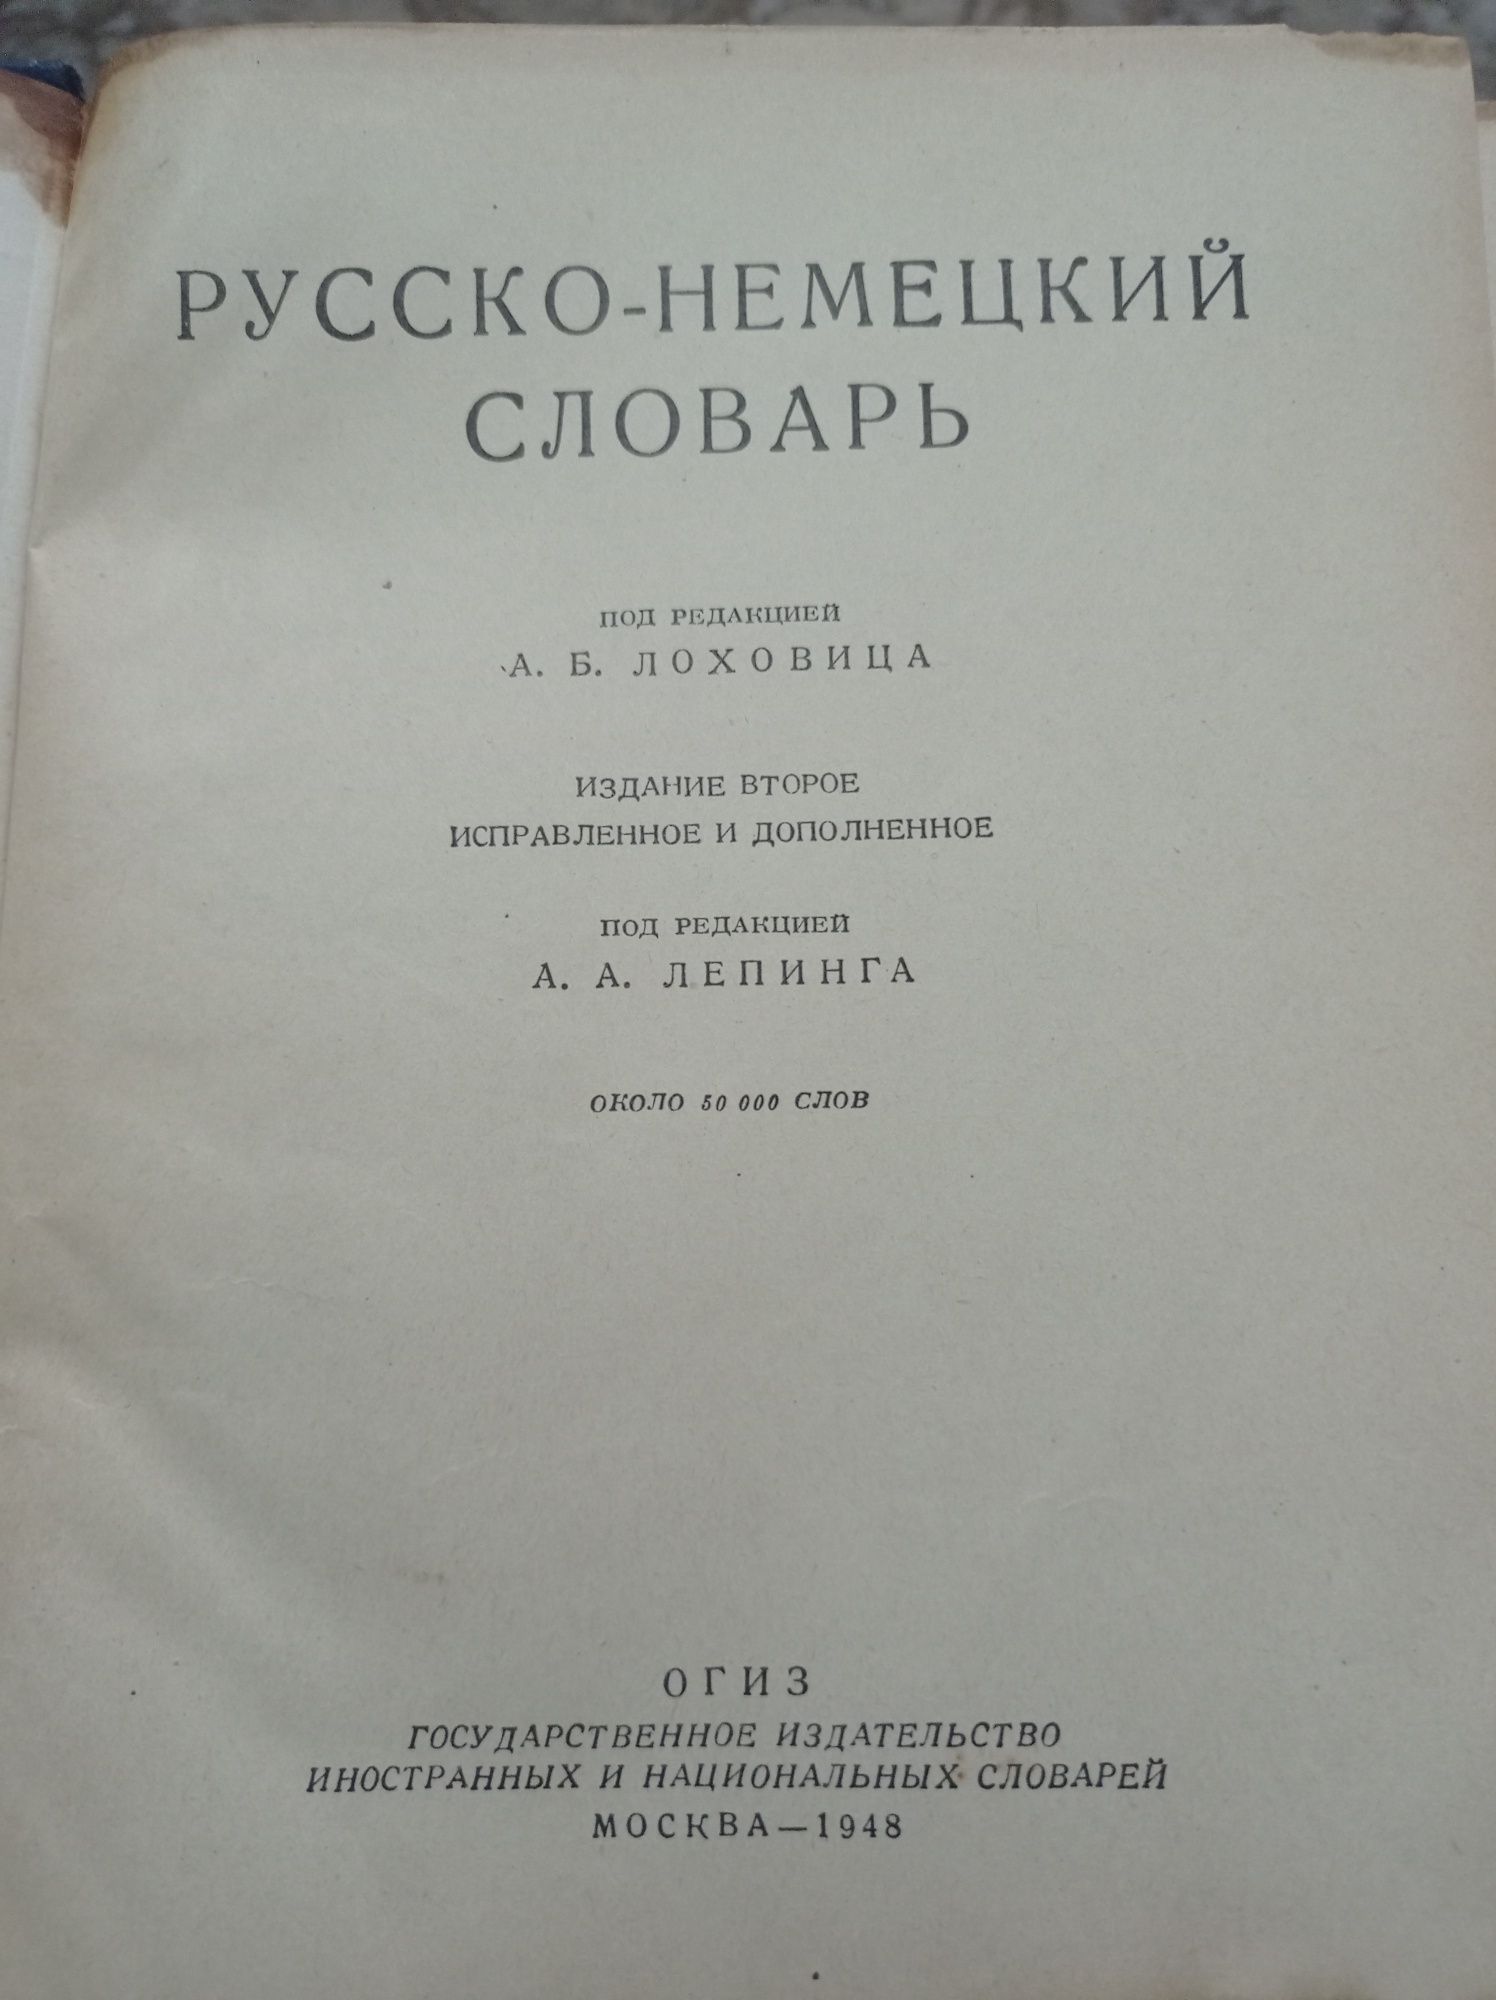 Русско-немецкий словарь,издание второе